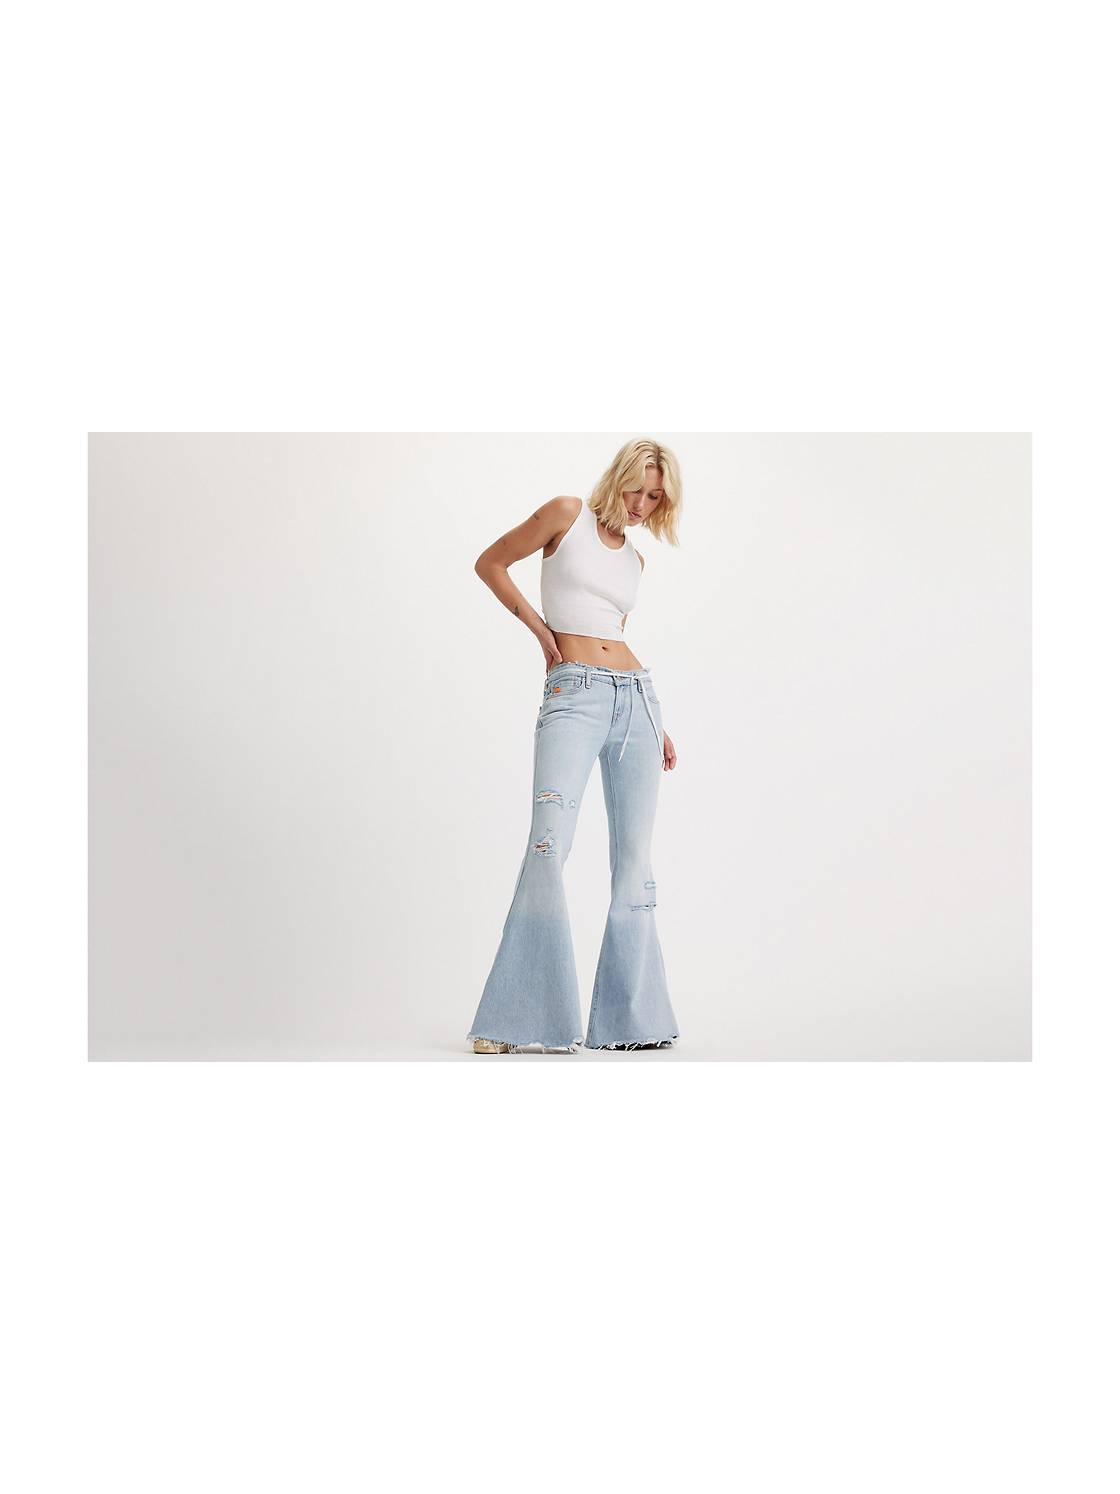 Women's Bell Bottom Jeans: Shop Women's Flare Jeans